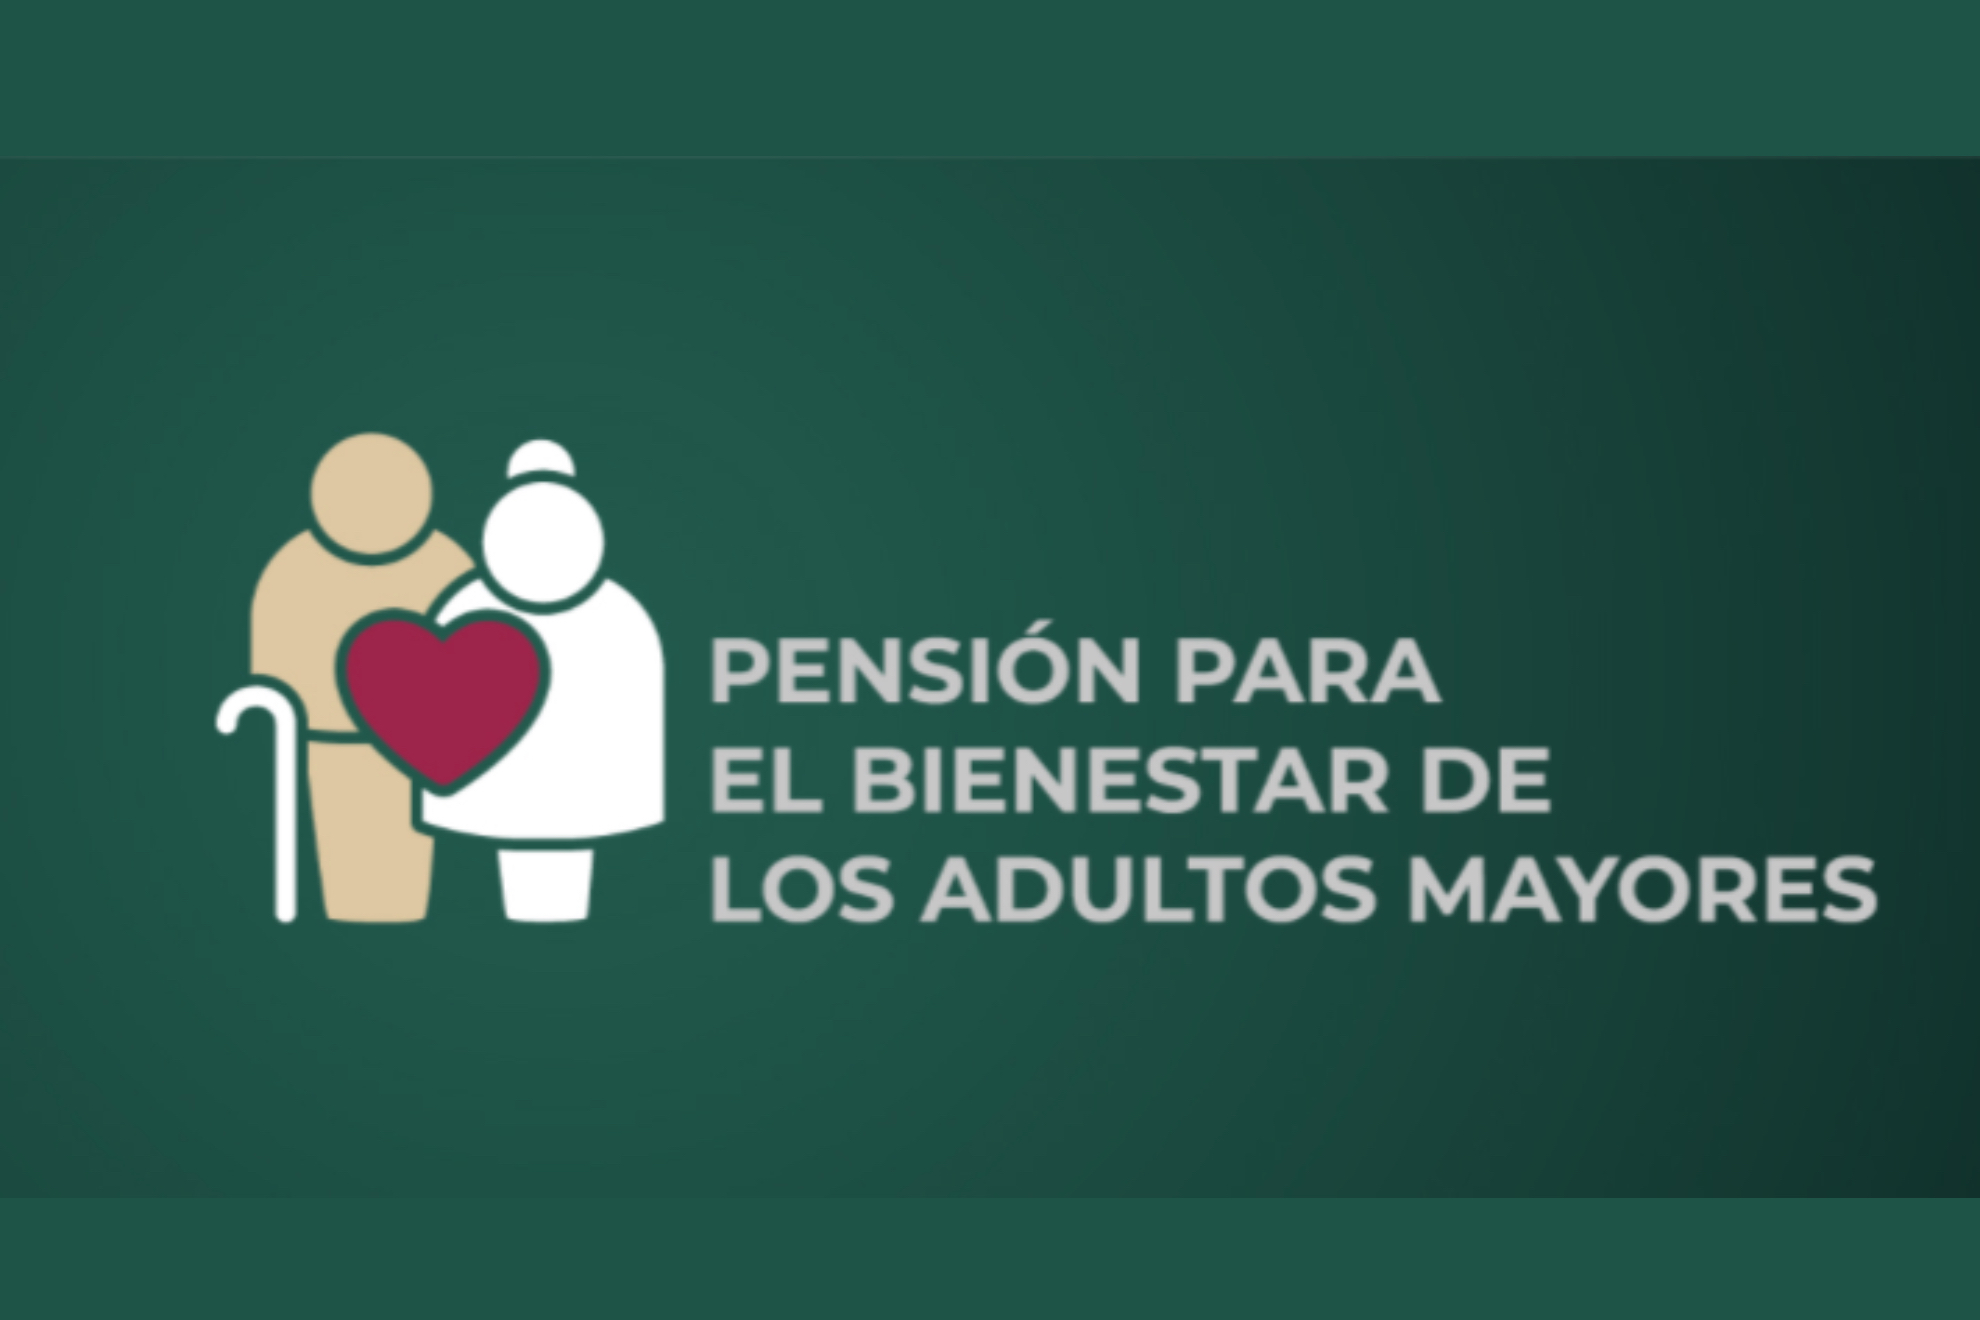 La Pensión del Bienestar consta de un apoyo bimestral de $4 mil 812.50 pesos.